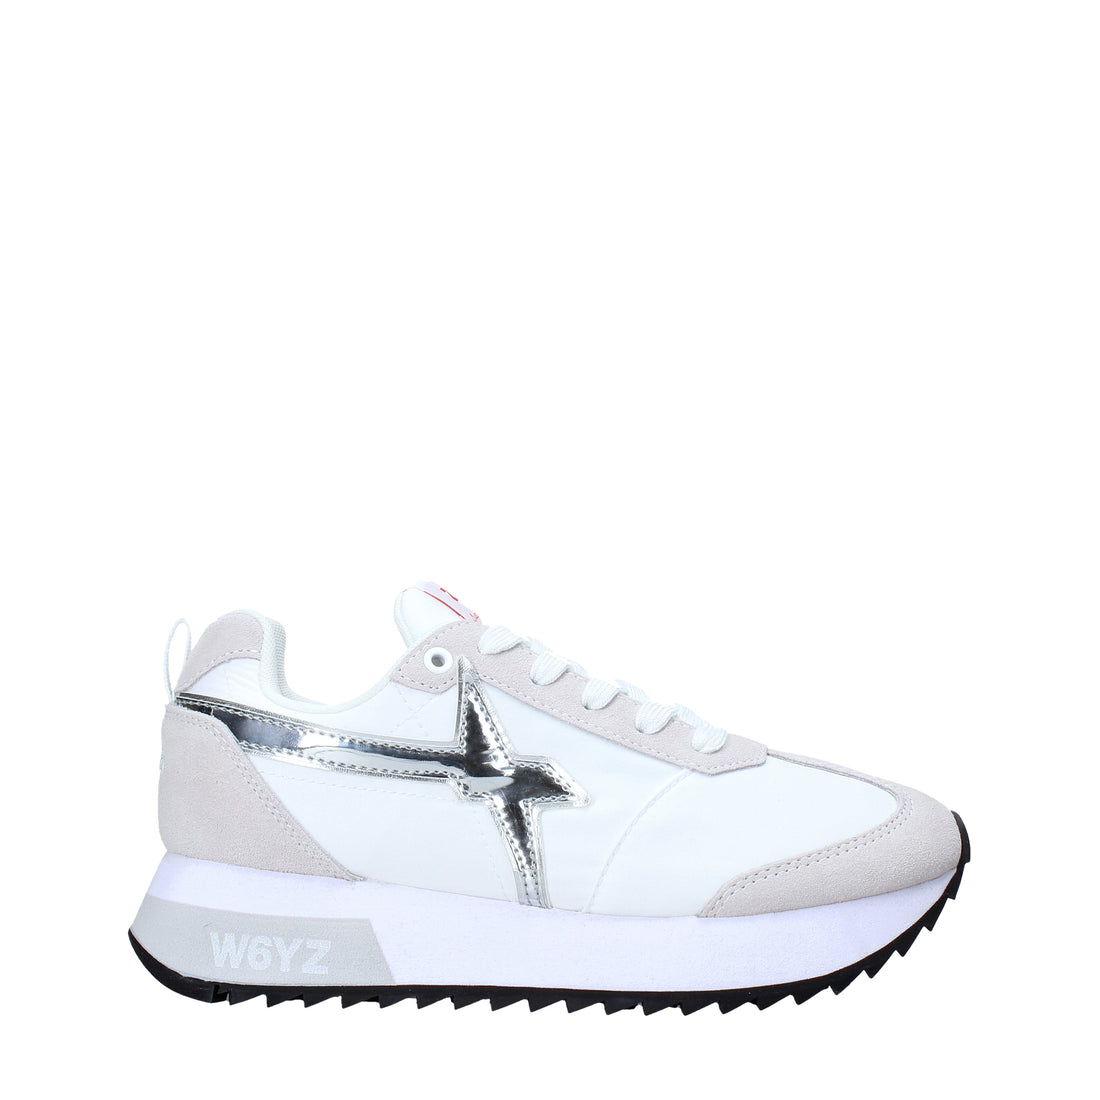 Sneakers Bianco Argento W6yz